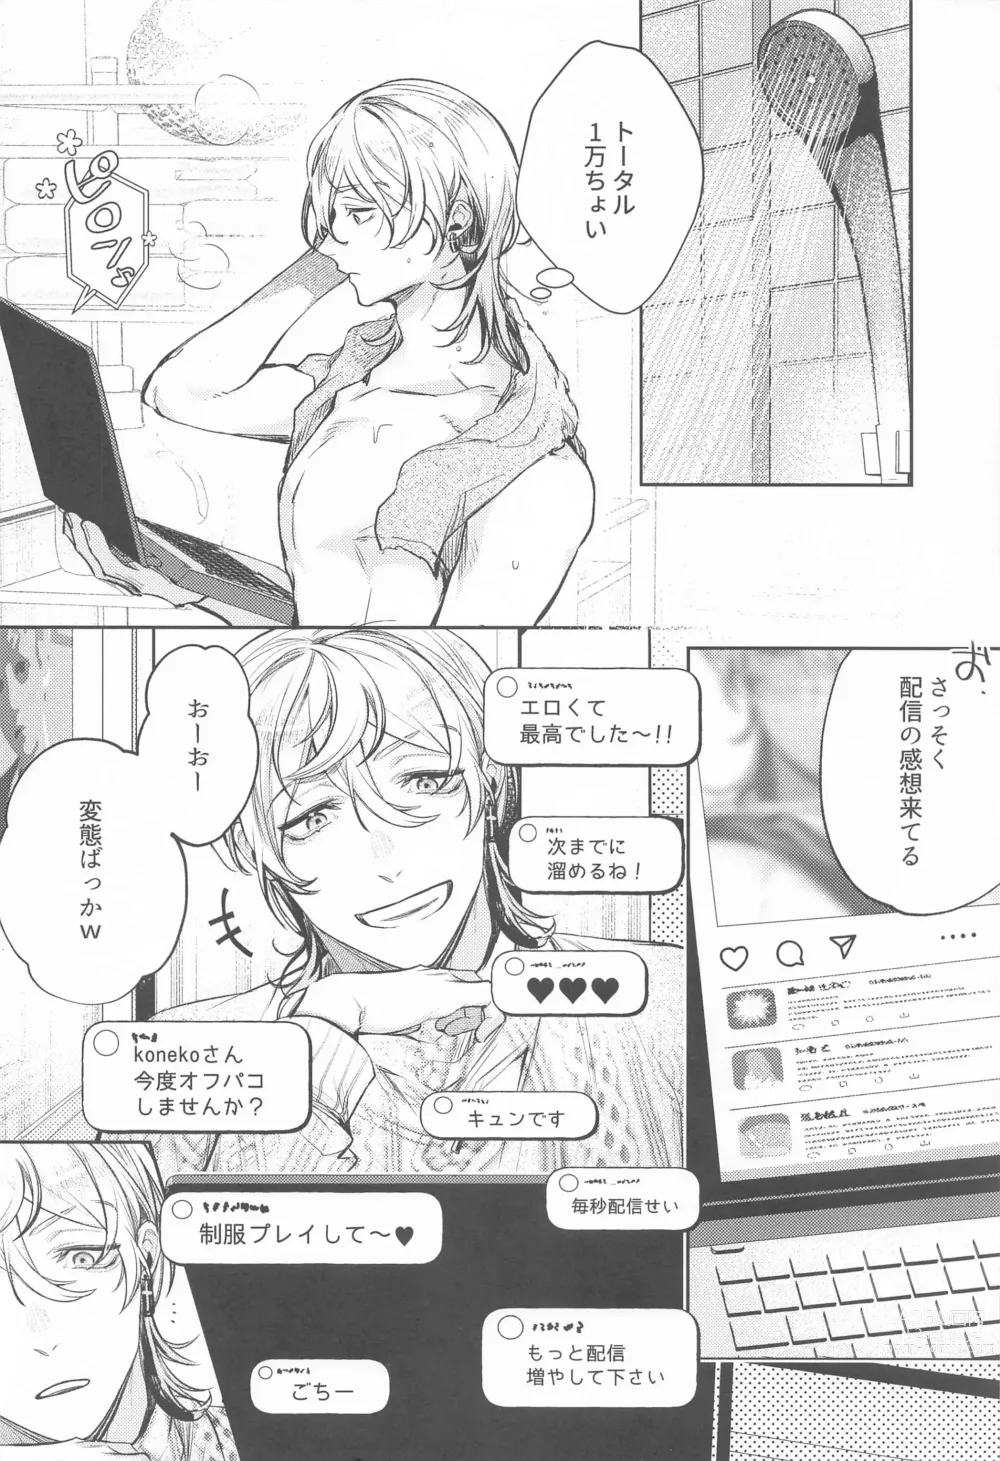 Page 7 of doujinshi Teikyou: Kataomoichuu no Otoko